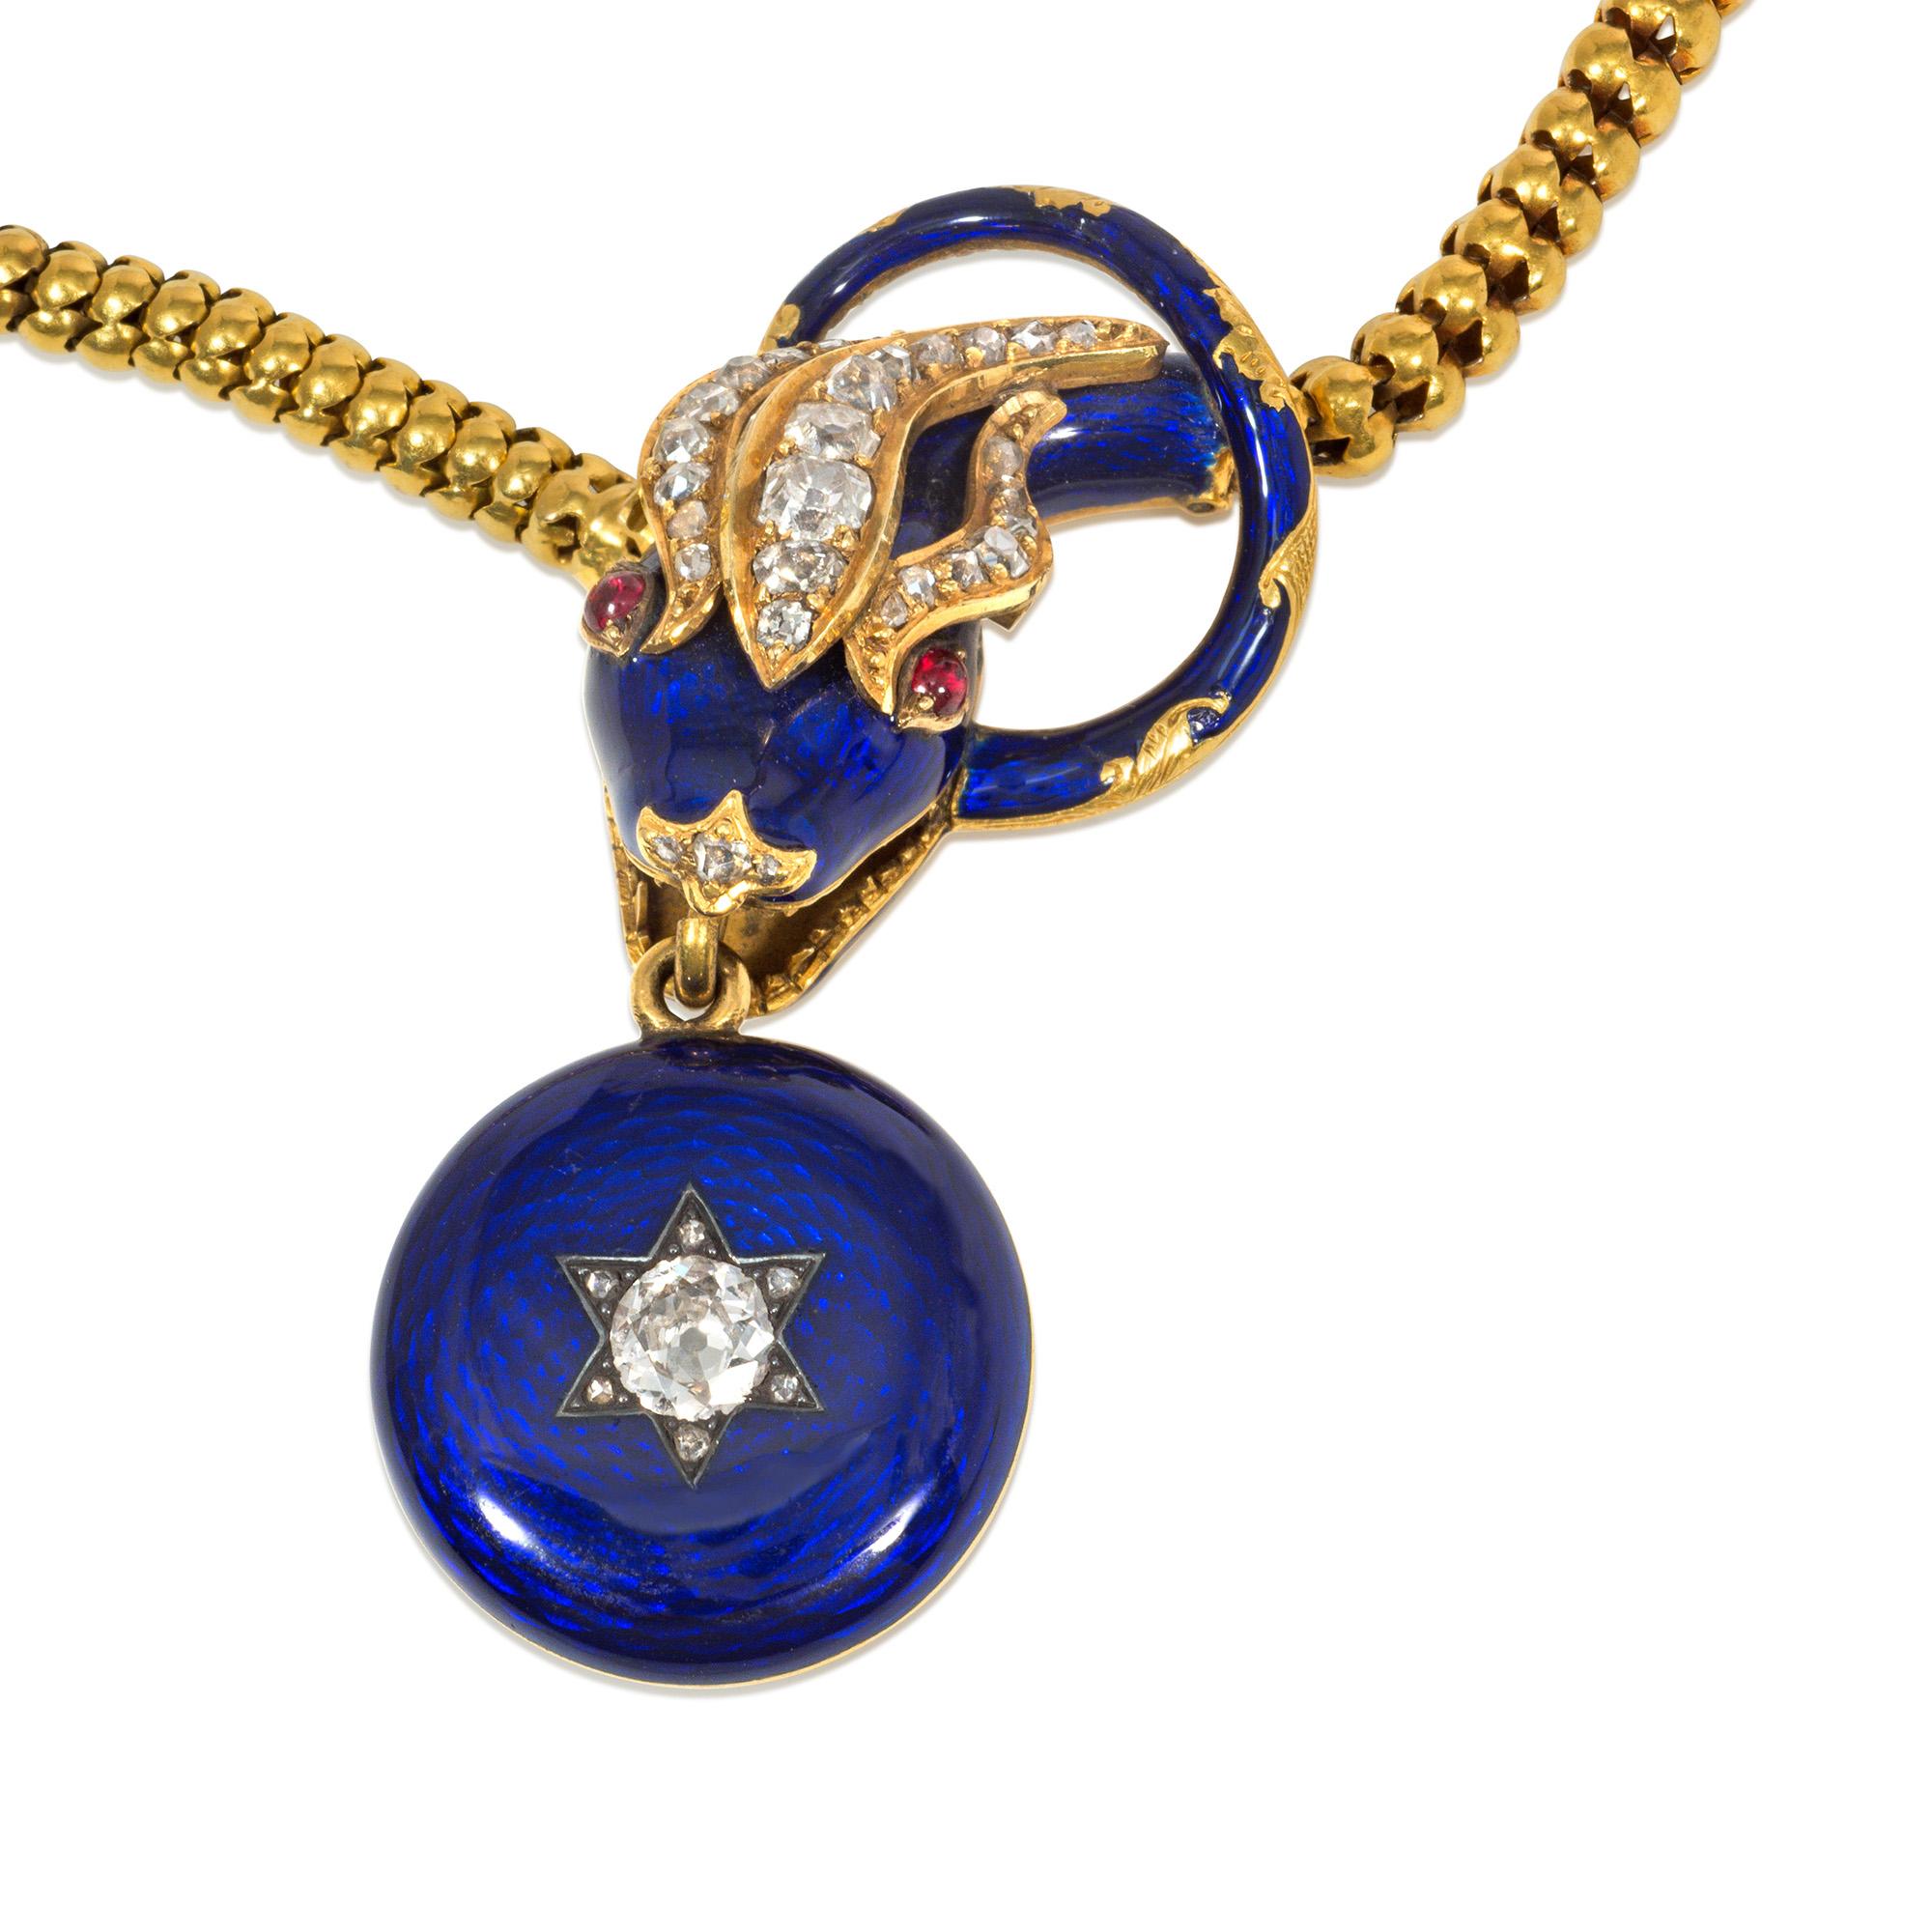 Eine antike frühviktorianische Halskette aus Gold, Emaille und Edelsteinen in Form einer ineinander verschlungenen Schlange mit einem Kopf aus Gold, blauer Emaille und Diamanten aus alten Minen mit Rubinaugen, an dem ein kreisförmiger, sternförmiger